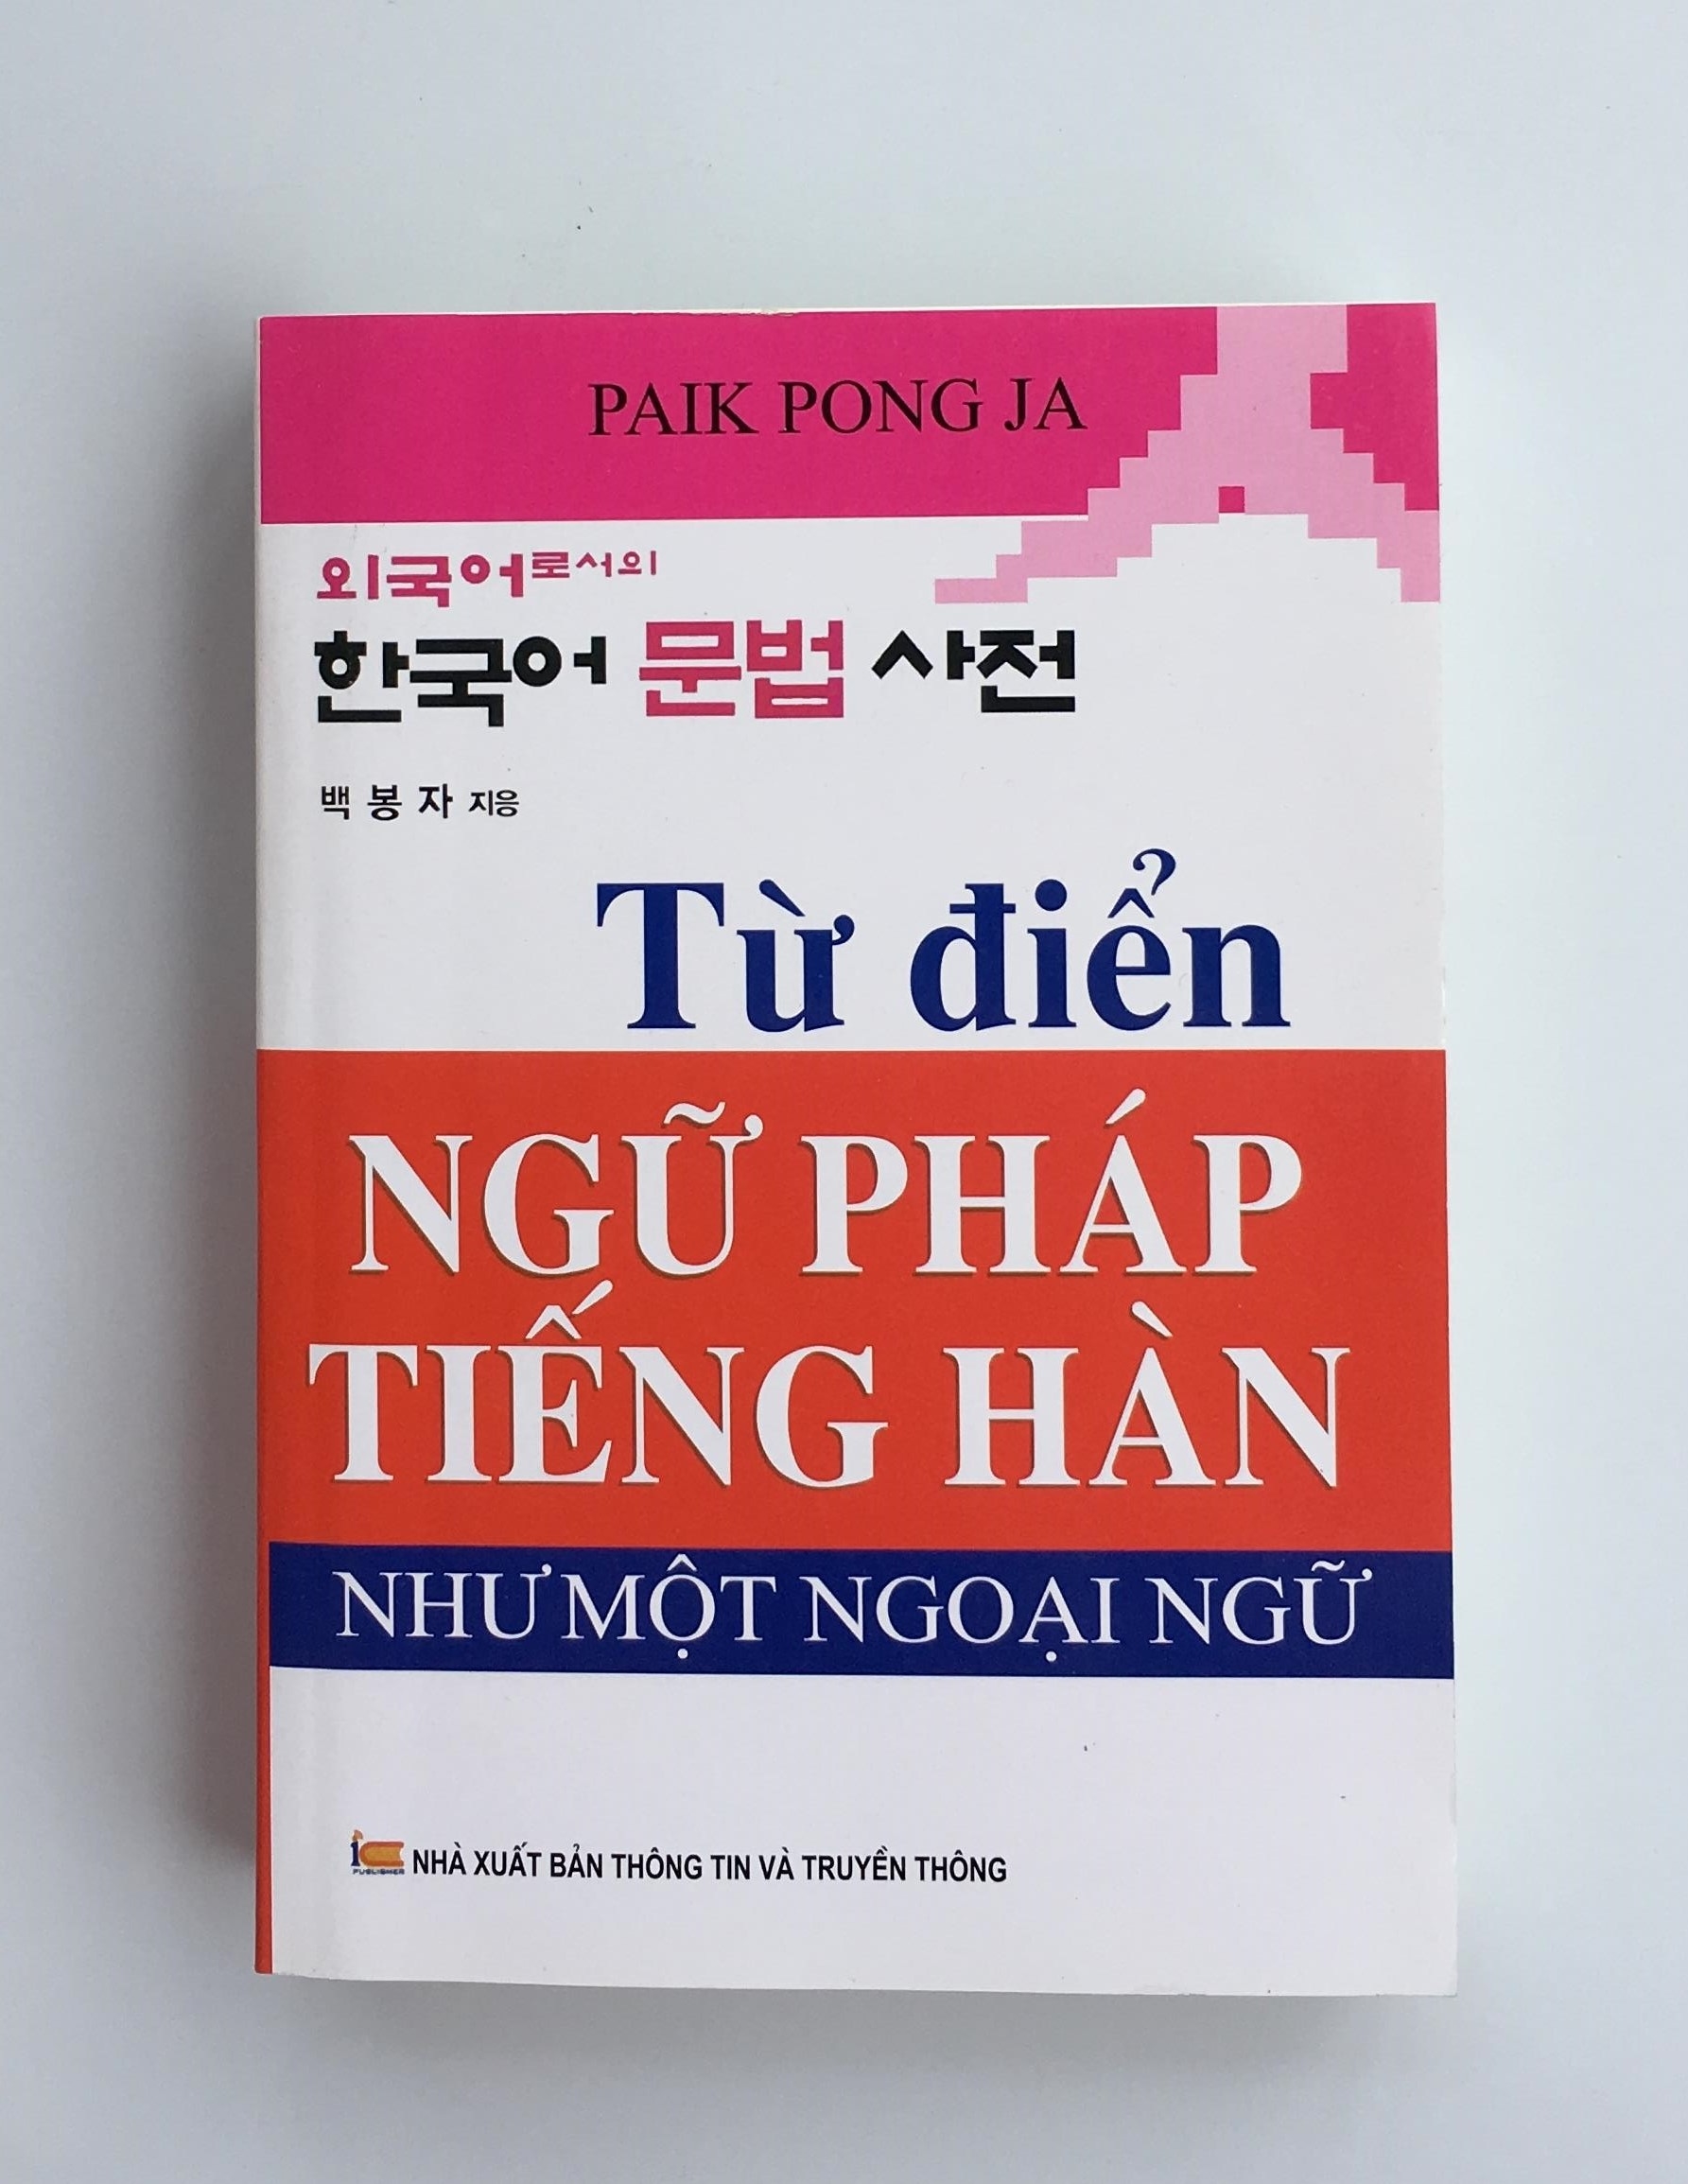 Từ Điển Ngữ Pháp Tiếng Hàn - Park Pong Ja - P78316 | Sàn Thương Mại Điện Tử  Của Khách Hàng Viettelpost